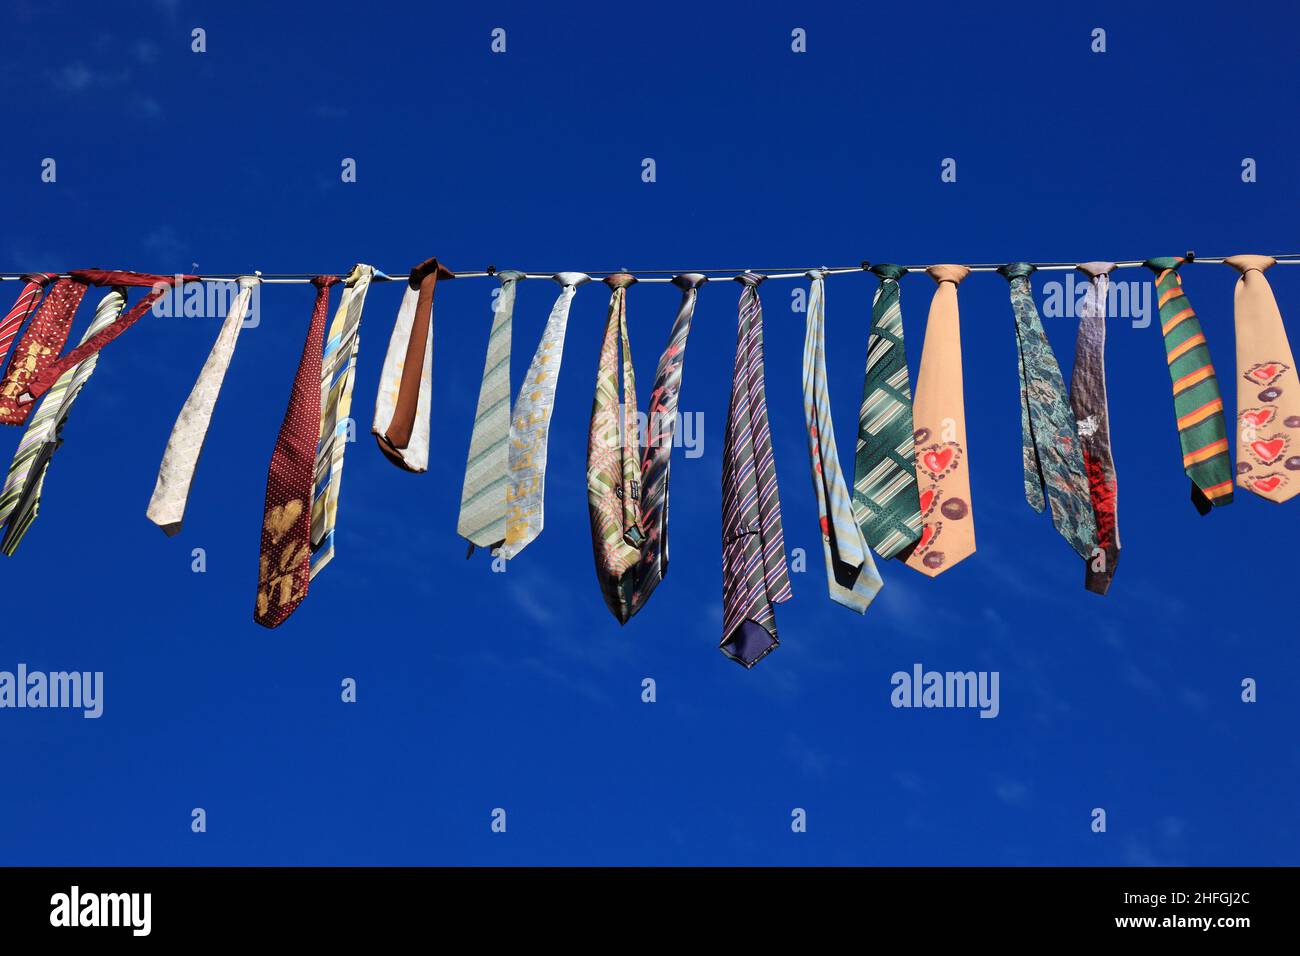 Viele bunte Krawatten hängen an einer Wäscheleine, blauer Himmel / molti legami colorati appesi su un clothesline, cielo blu Foto Stock